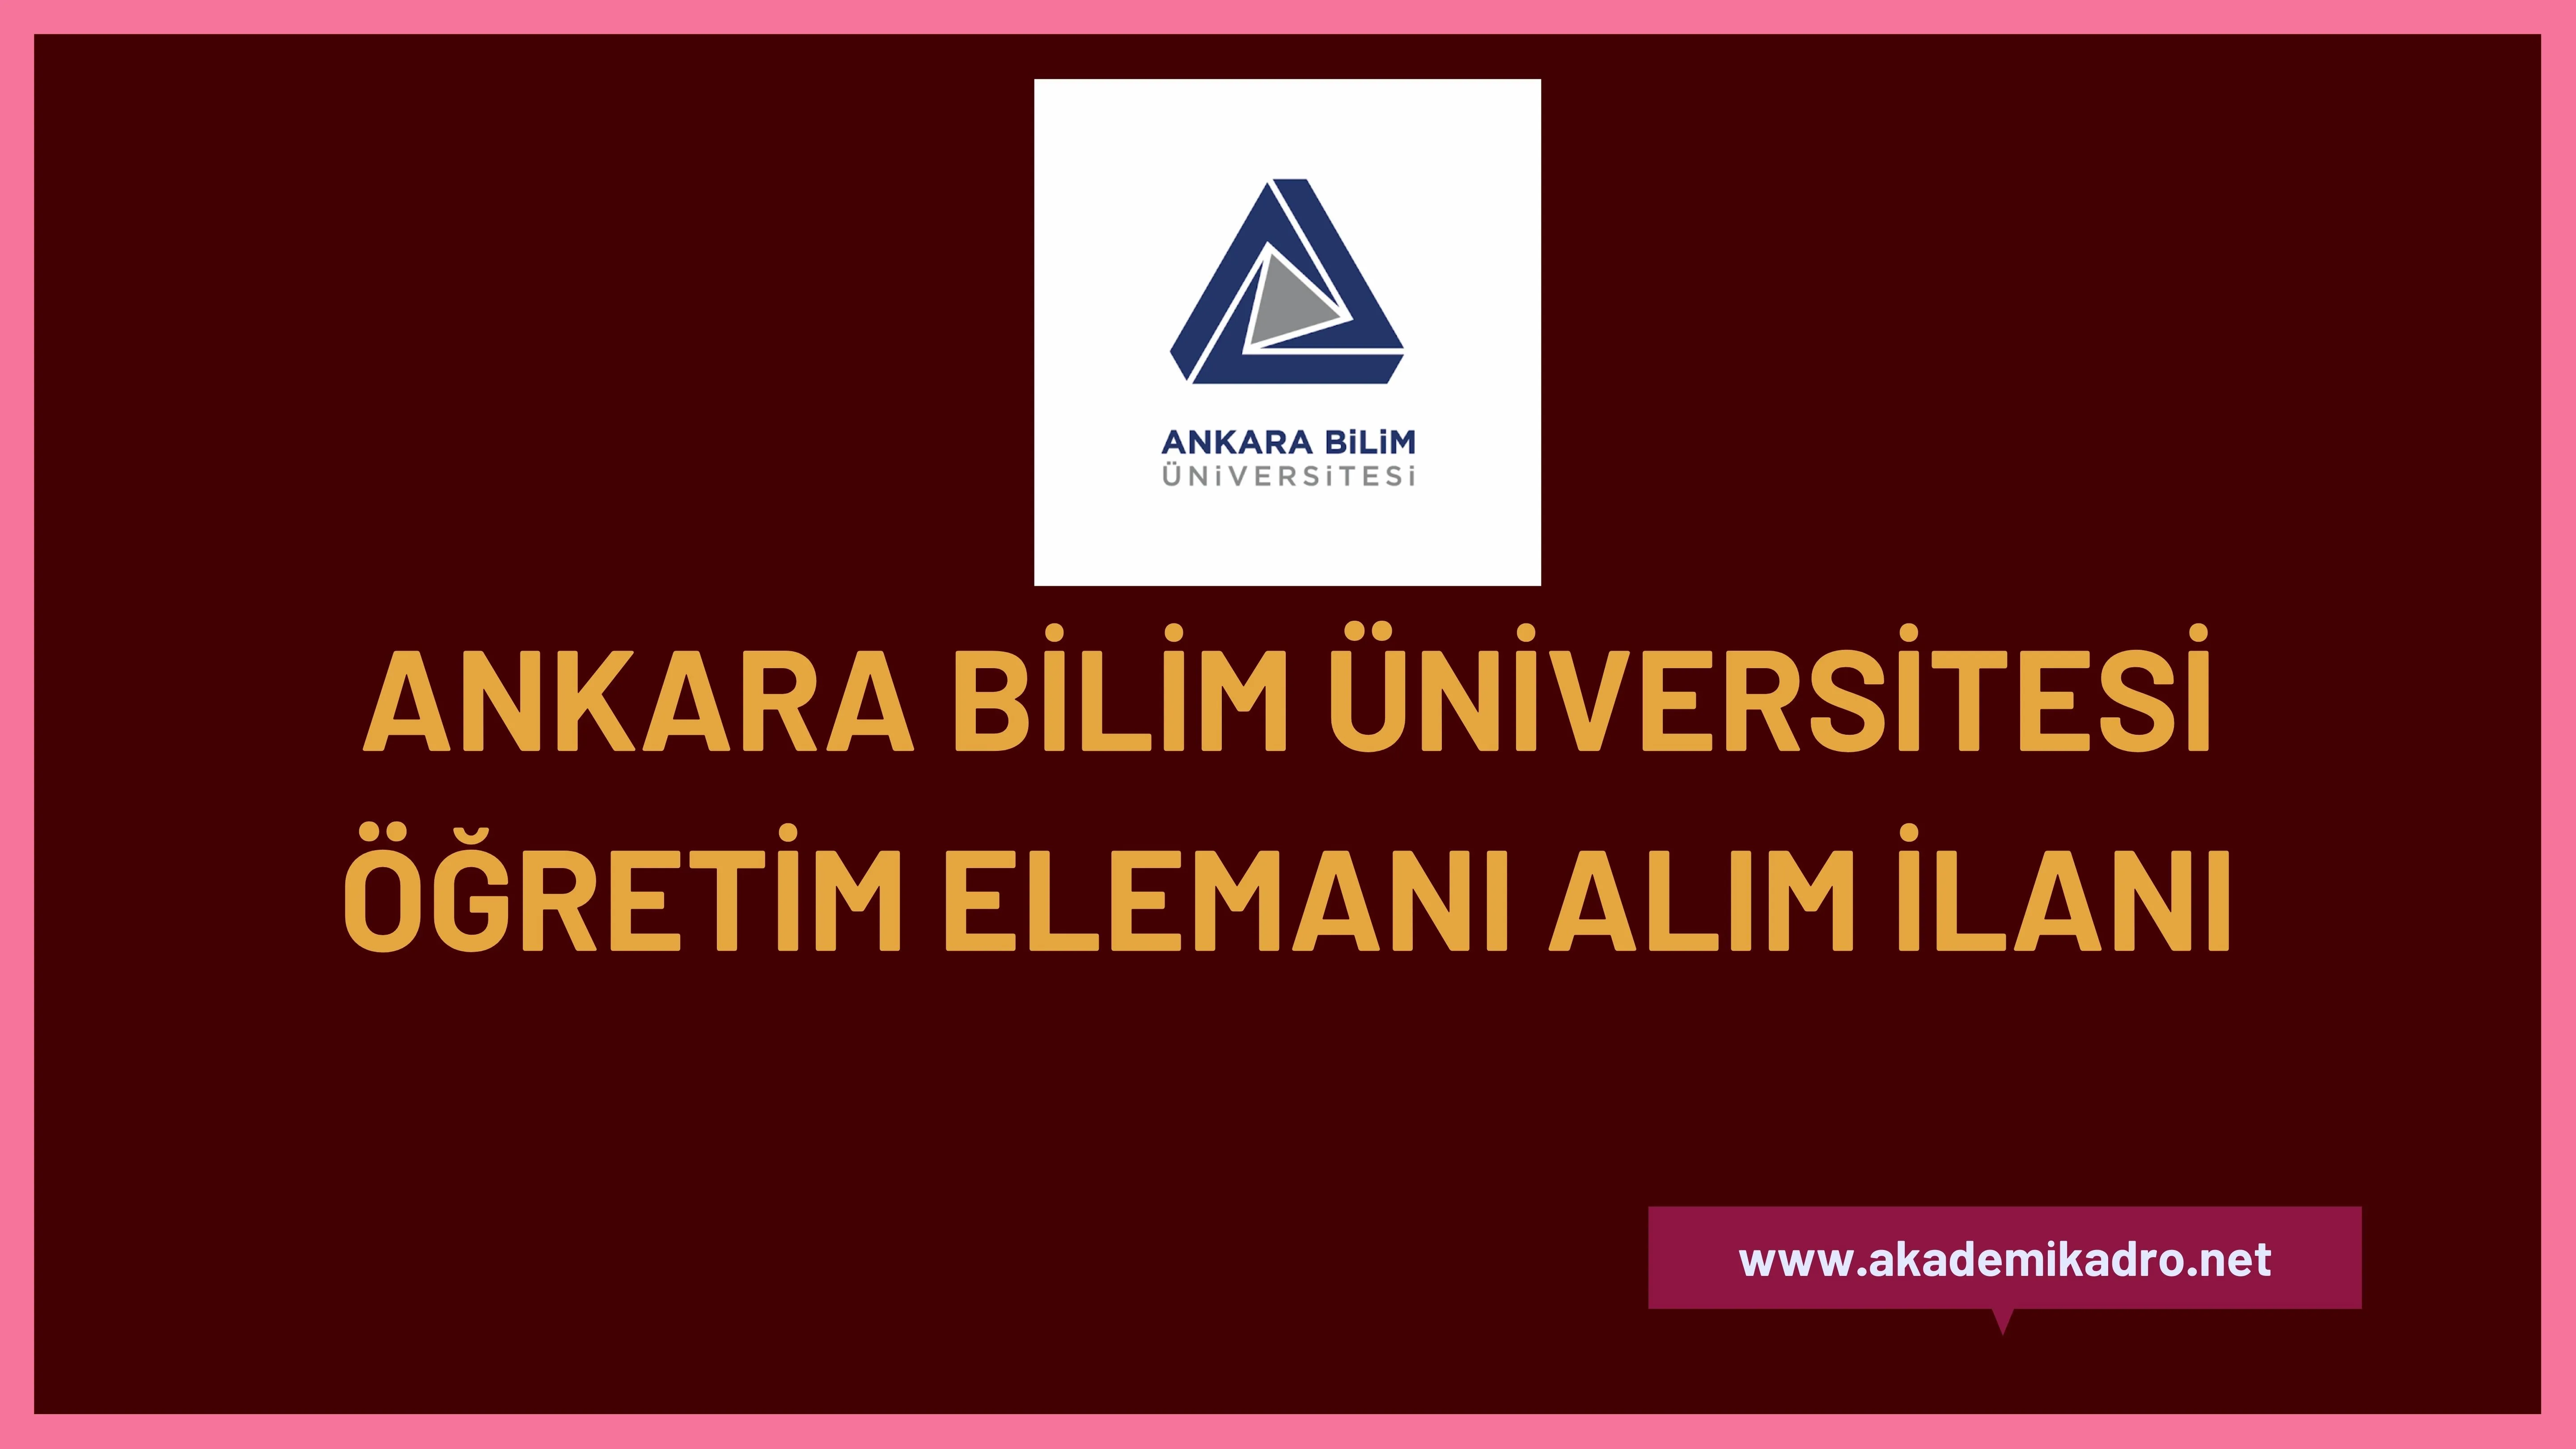 Ankara Bilim Üniversitesi 10 öğretim görevlisi ve birçok alandan 20 öğretim üyesi olmak üzere 30 öğretim elemanı alacak.